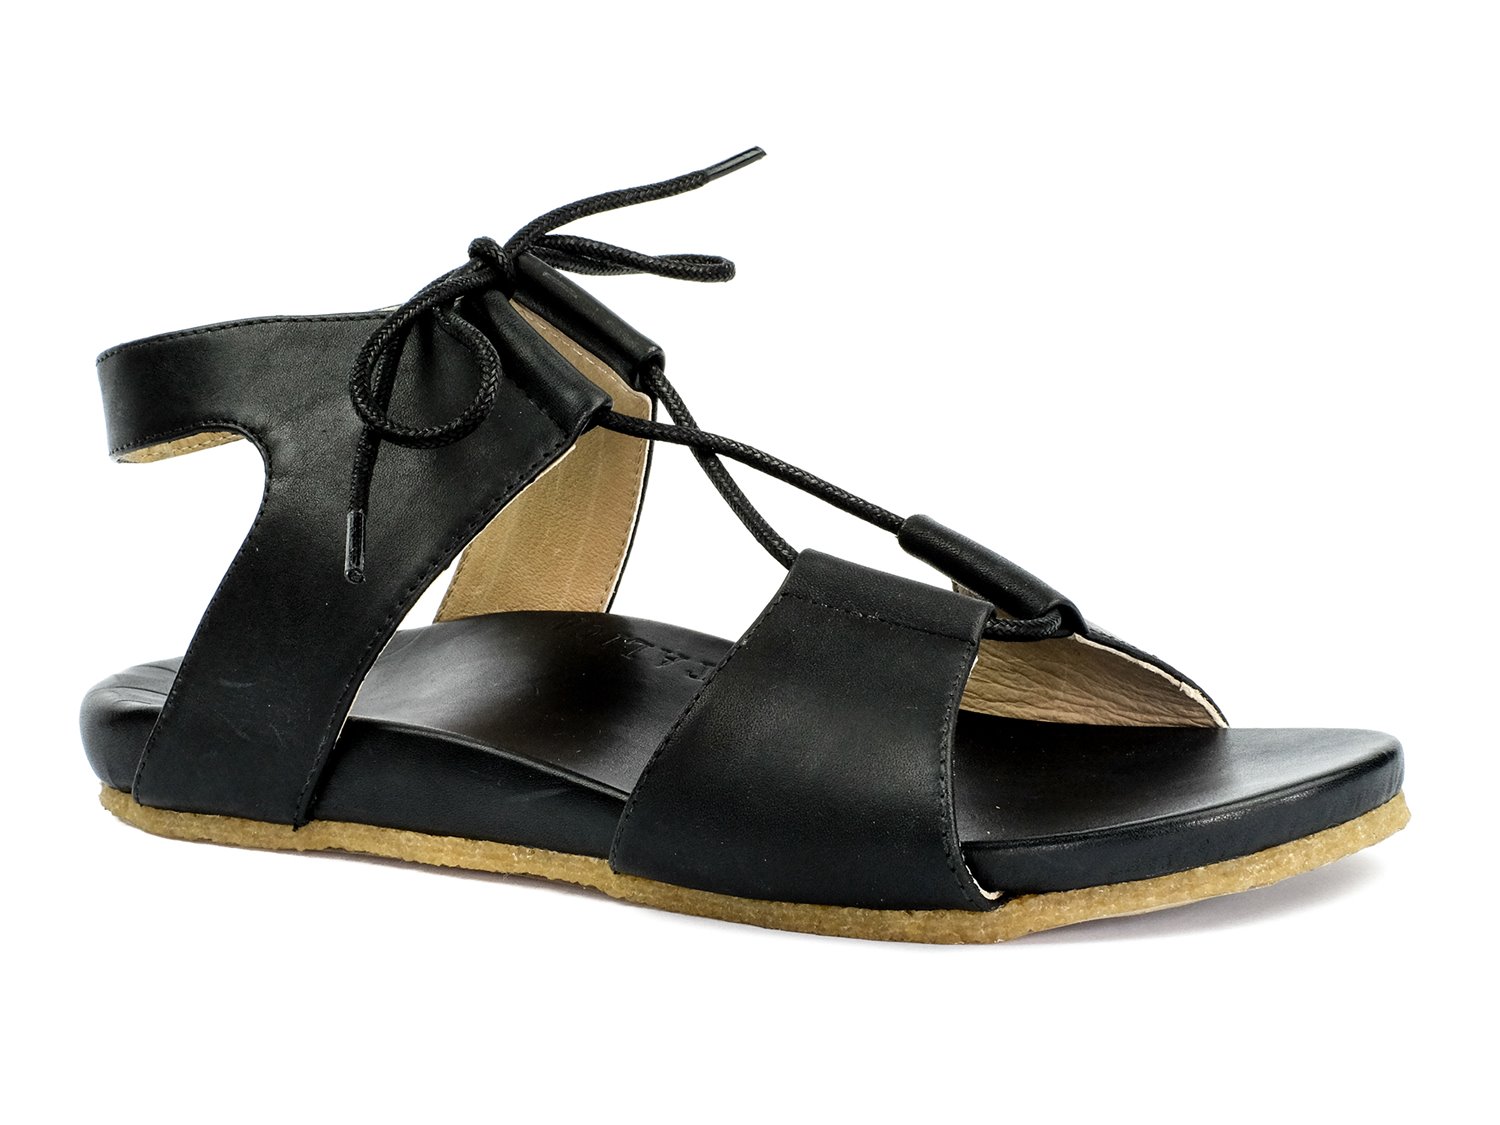 Revitalign Isabel - Women's Comfort Sandal Black - 9